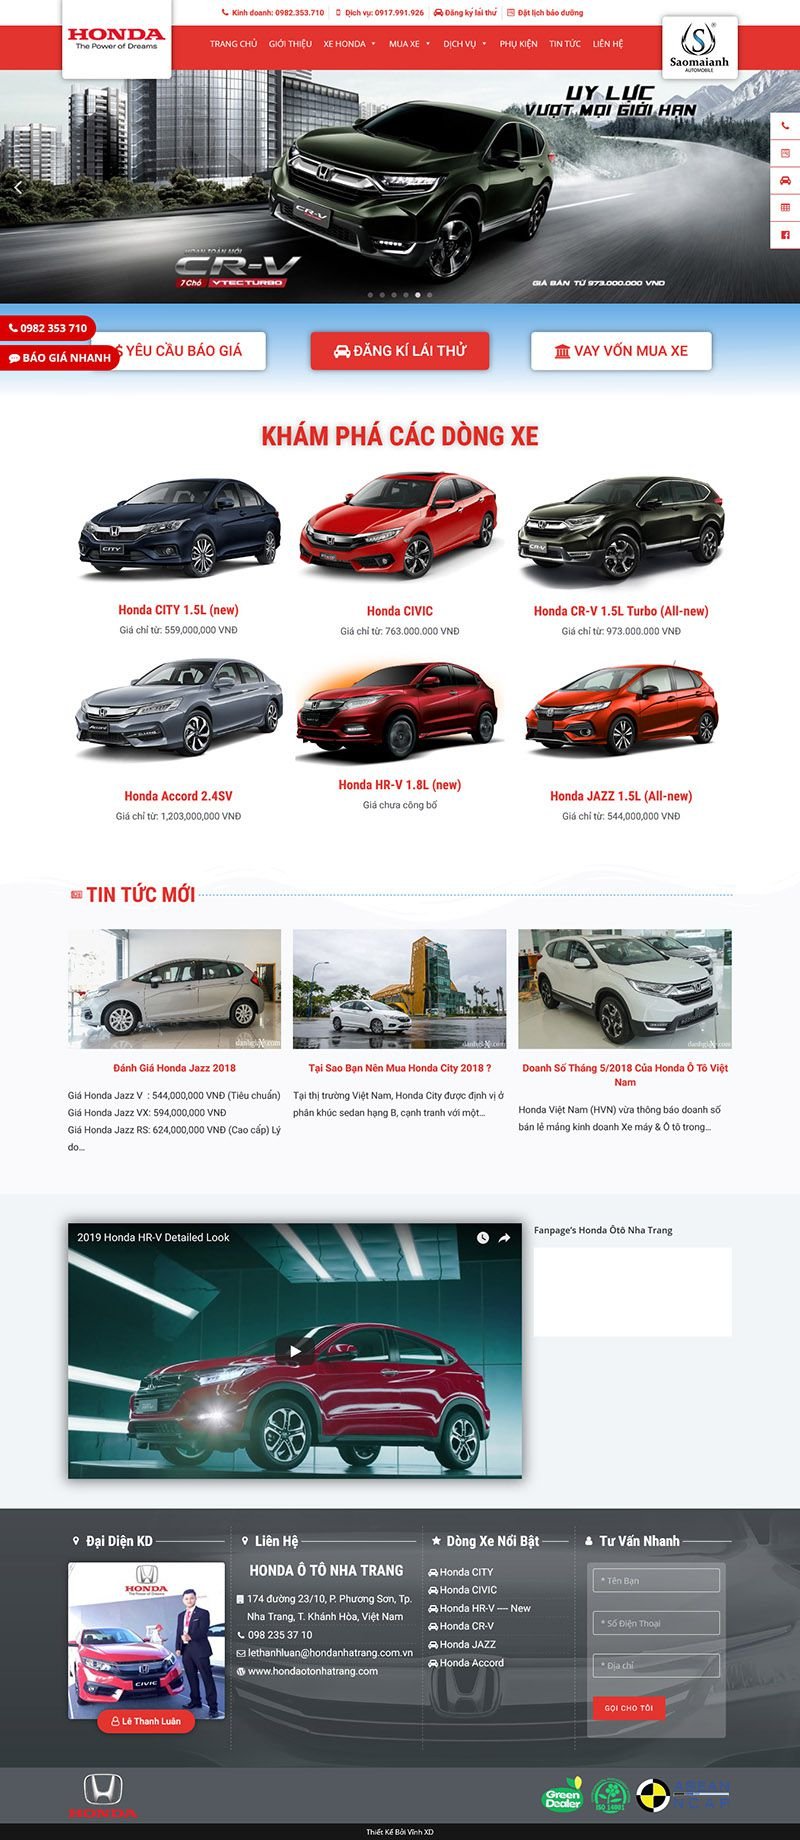 Lễ bàn giao  Honda Ôtô Nha Trang  Mua bán xe  Dịch vụ  Facebook